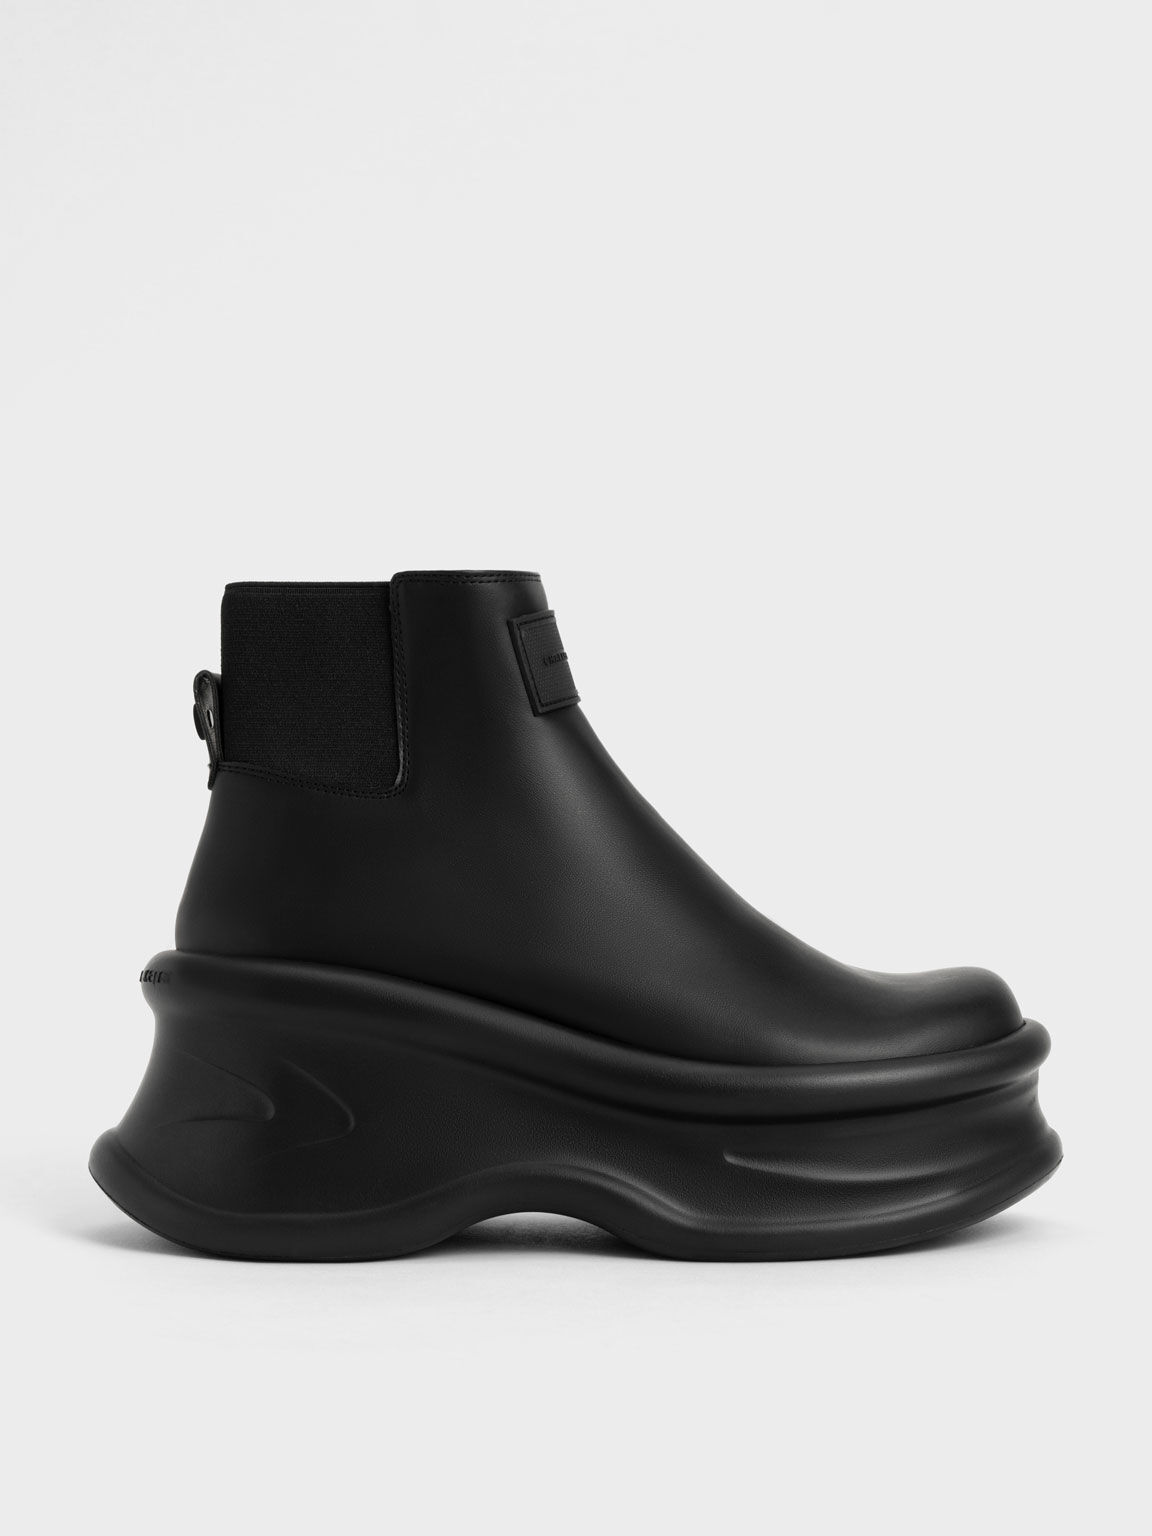 Curved Platform Ankle Boots, Black, hi-res